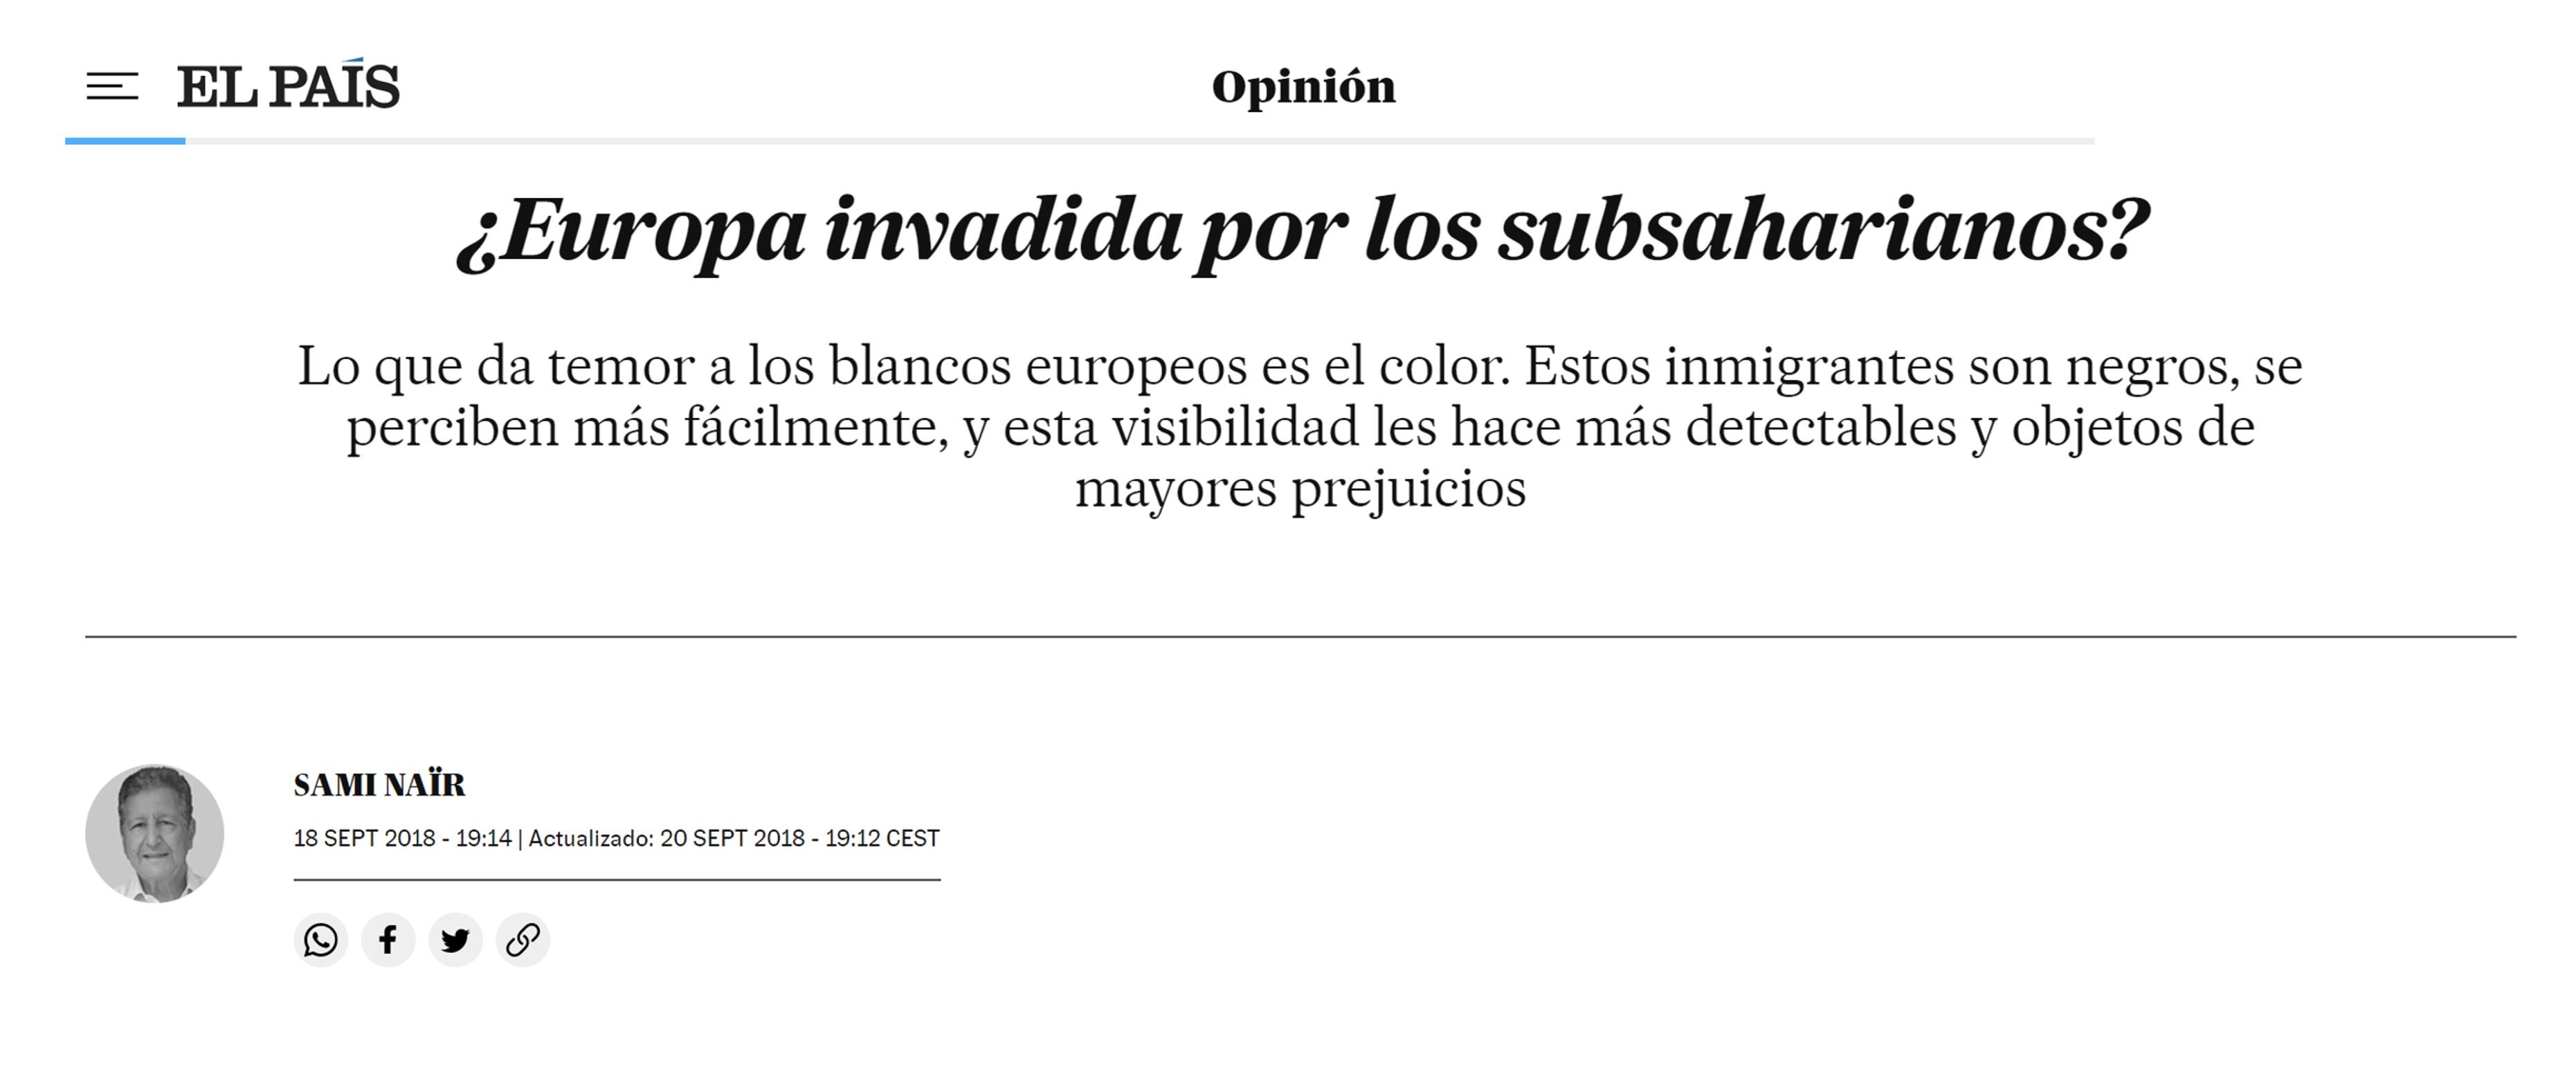 El País, 20.09.2018